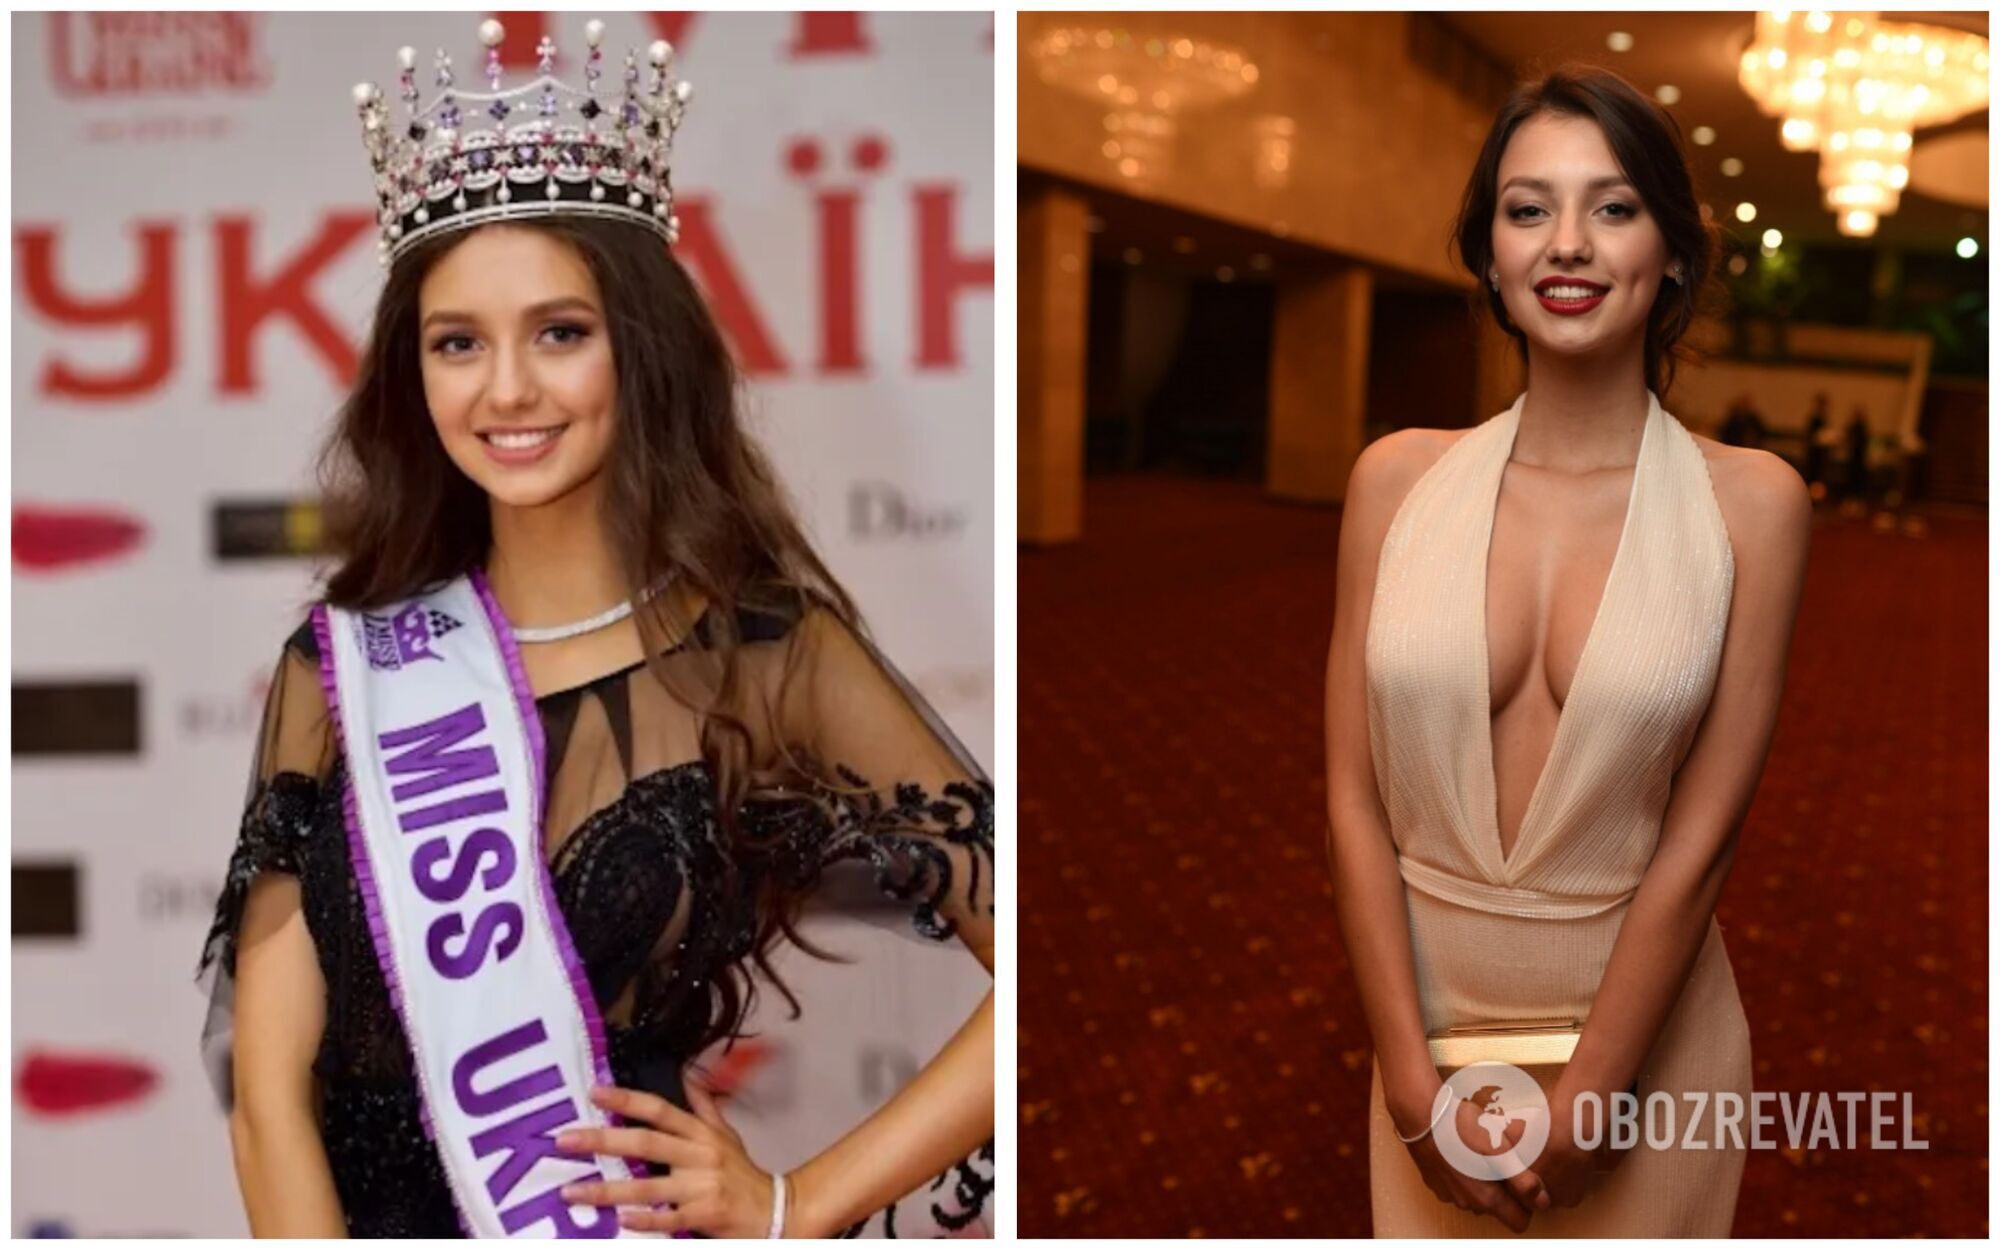 "Мисс Украина" 2017 года: Полина Ткач тогда и сейчас